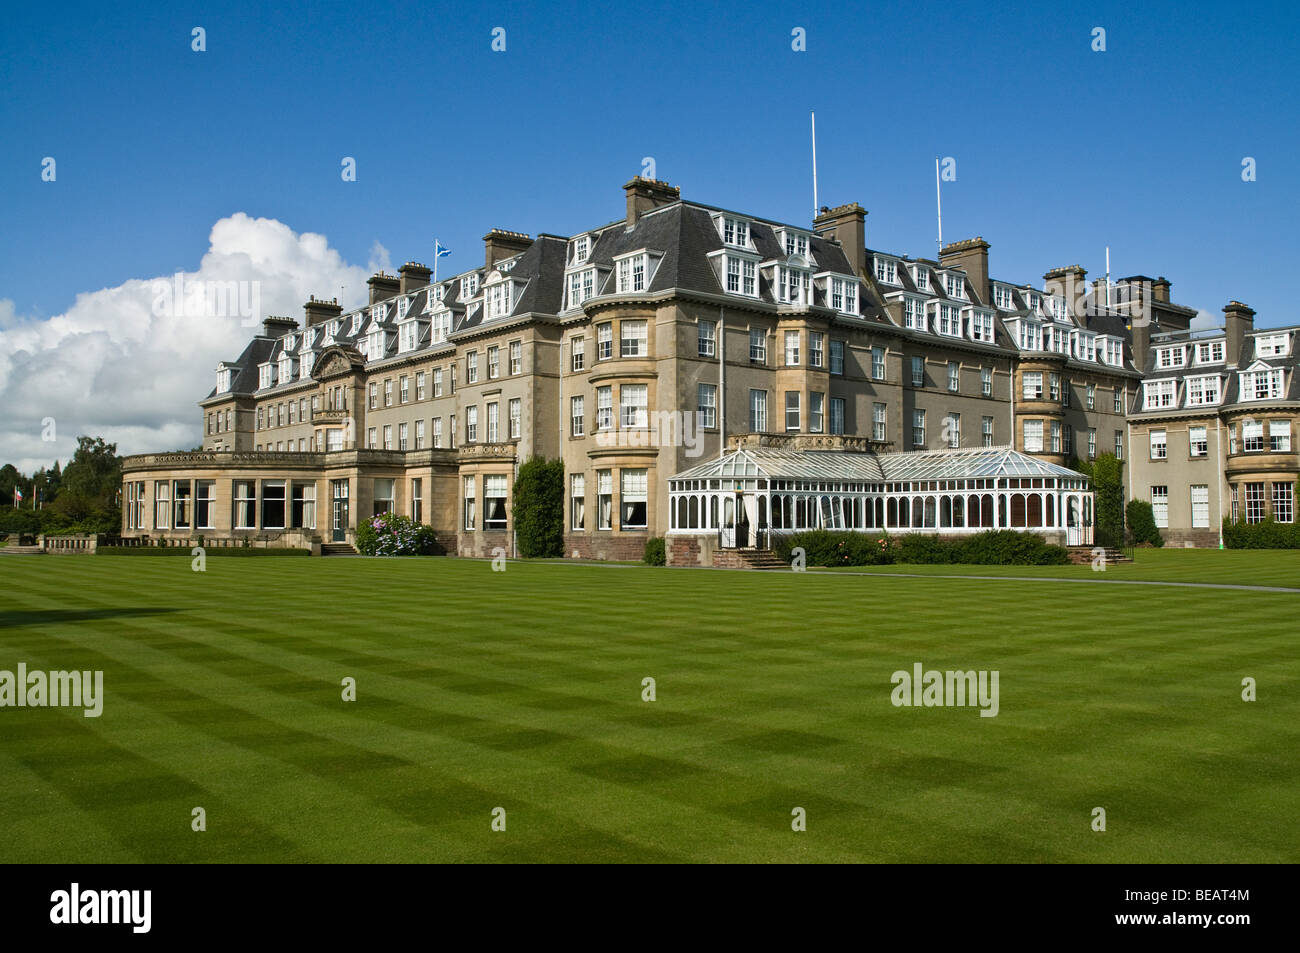 Dh Gleneagles Hotel AUCHTERARDER PERTHSHIRE Gebäude-augolf Luxus hotels Schottland Highlands Großbritannien Stockfoto